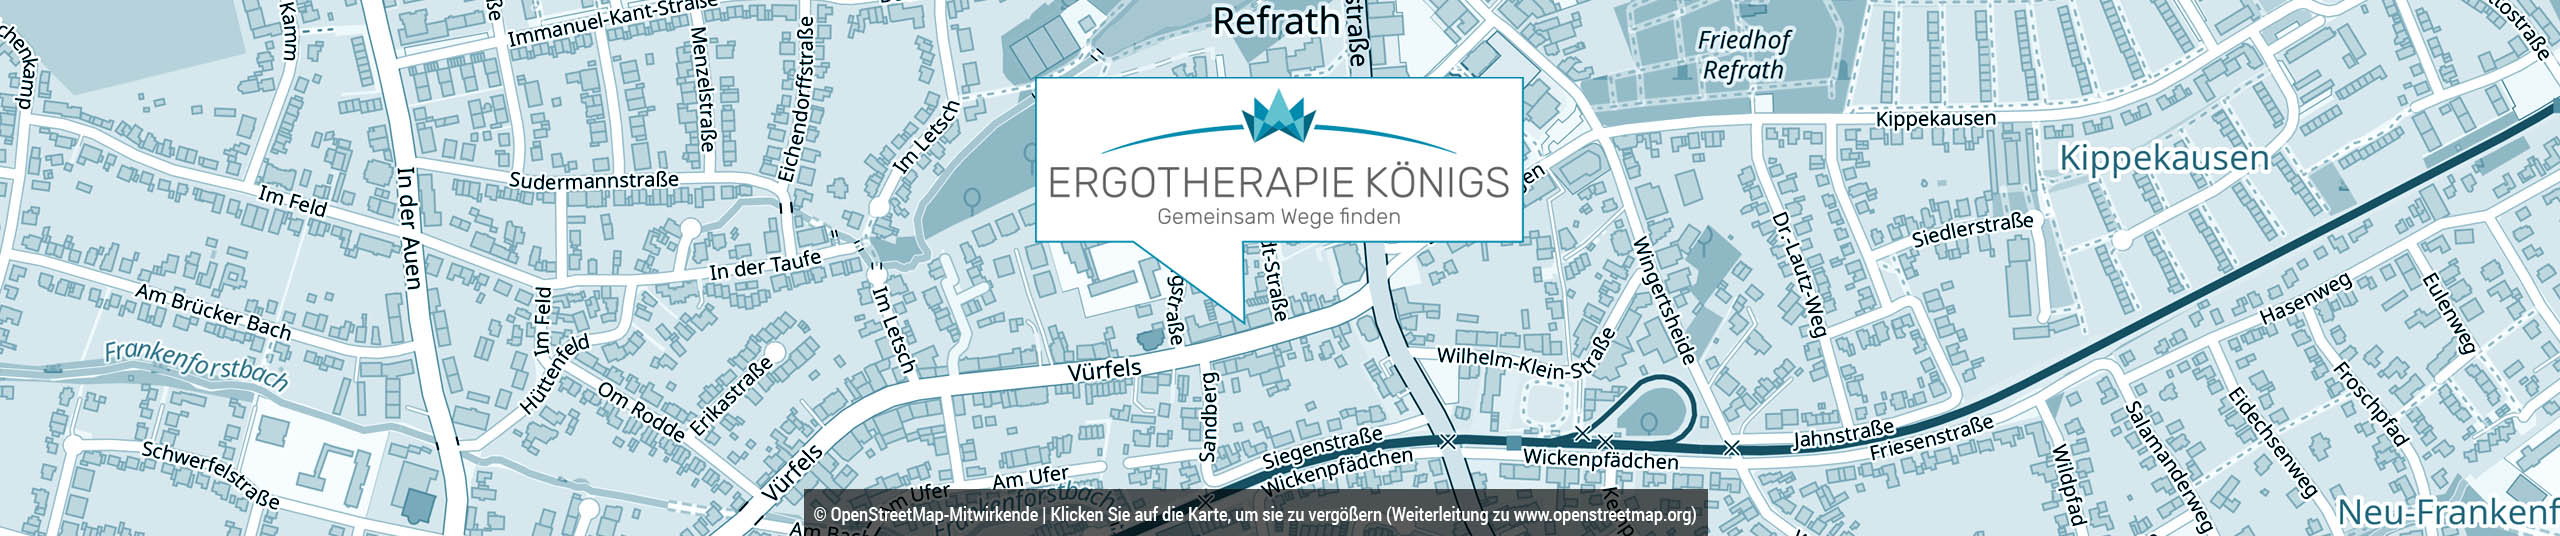 Praxis für Ergotherapie Vanessa Königs in Bergisch Gladbach-Refrath - Behandlungsschwerpunkte liegen im Bereich Pädiatrie, Neurologie, Geriatrie, Orthopädie und Psychiatrie